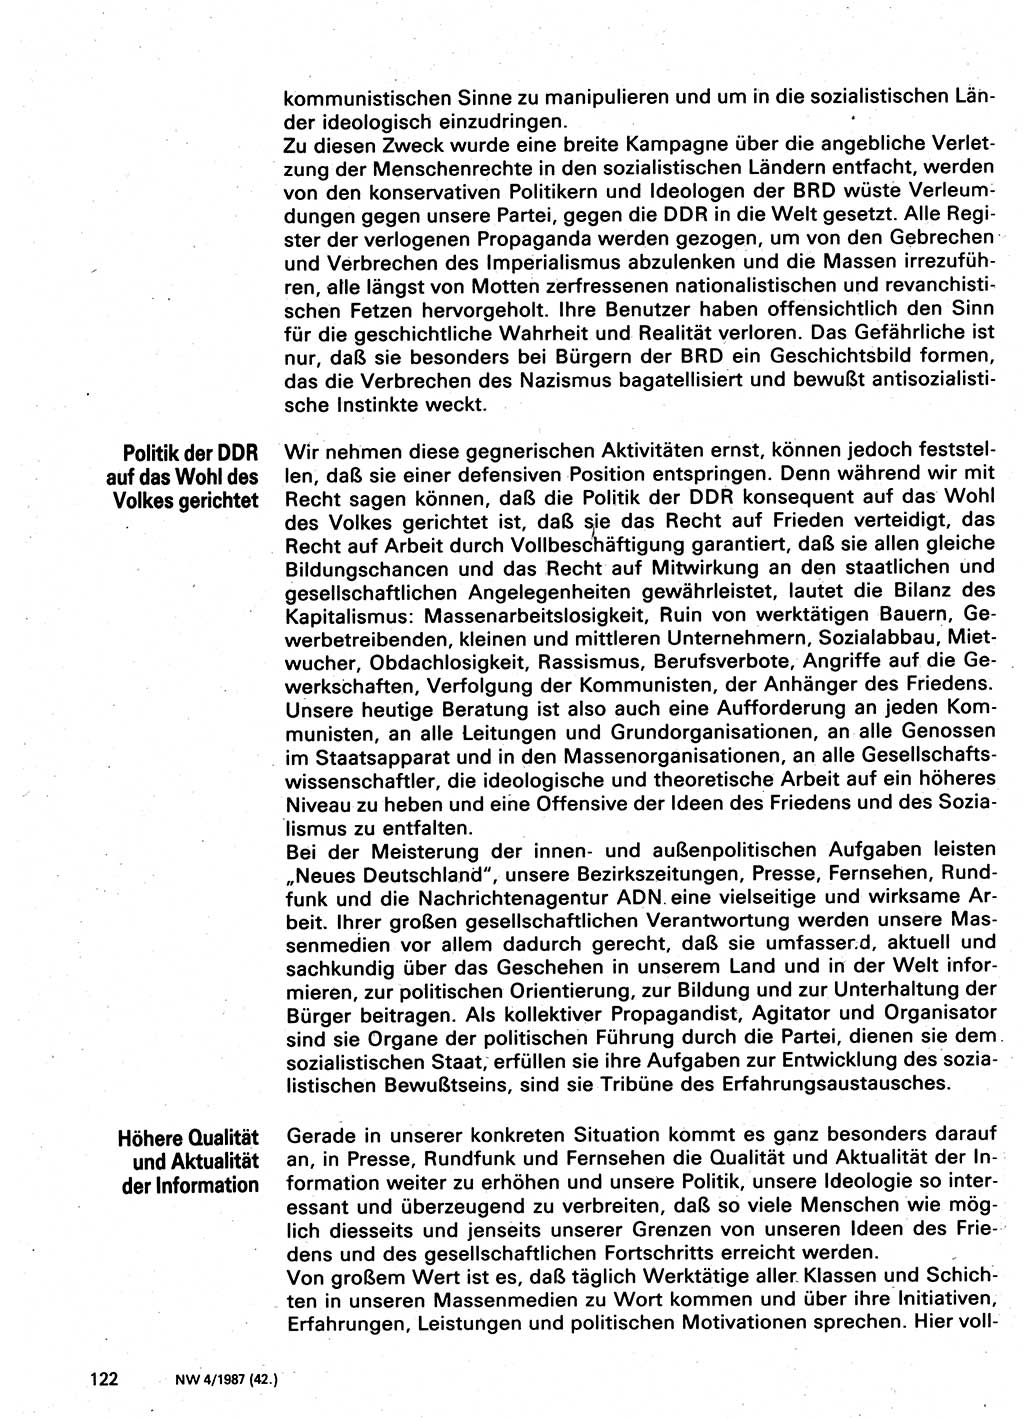 Neuer Weg (NW), Organ des Zentralkomitees (ZK) der SED (Sozialistische Einheitspartei Deutschlands) für Fragen des Parteilebens, 42. Jahrgang [Deutsche Demokratische Republik (DDR)] 1987, Seite 122 (NW ZK SED DDR 1987, S. 122)